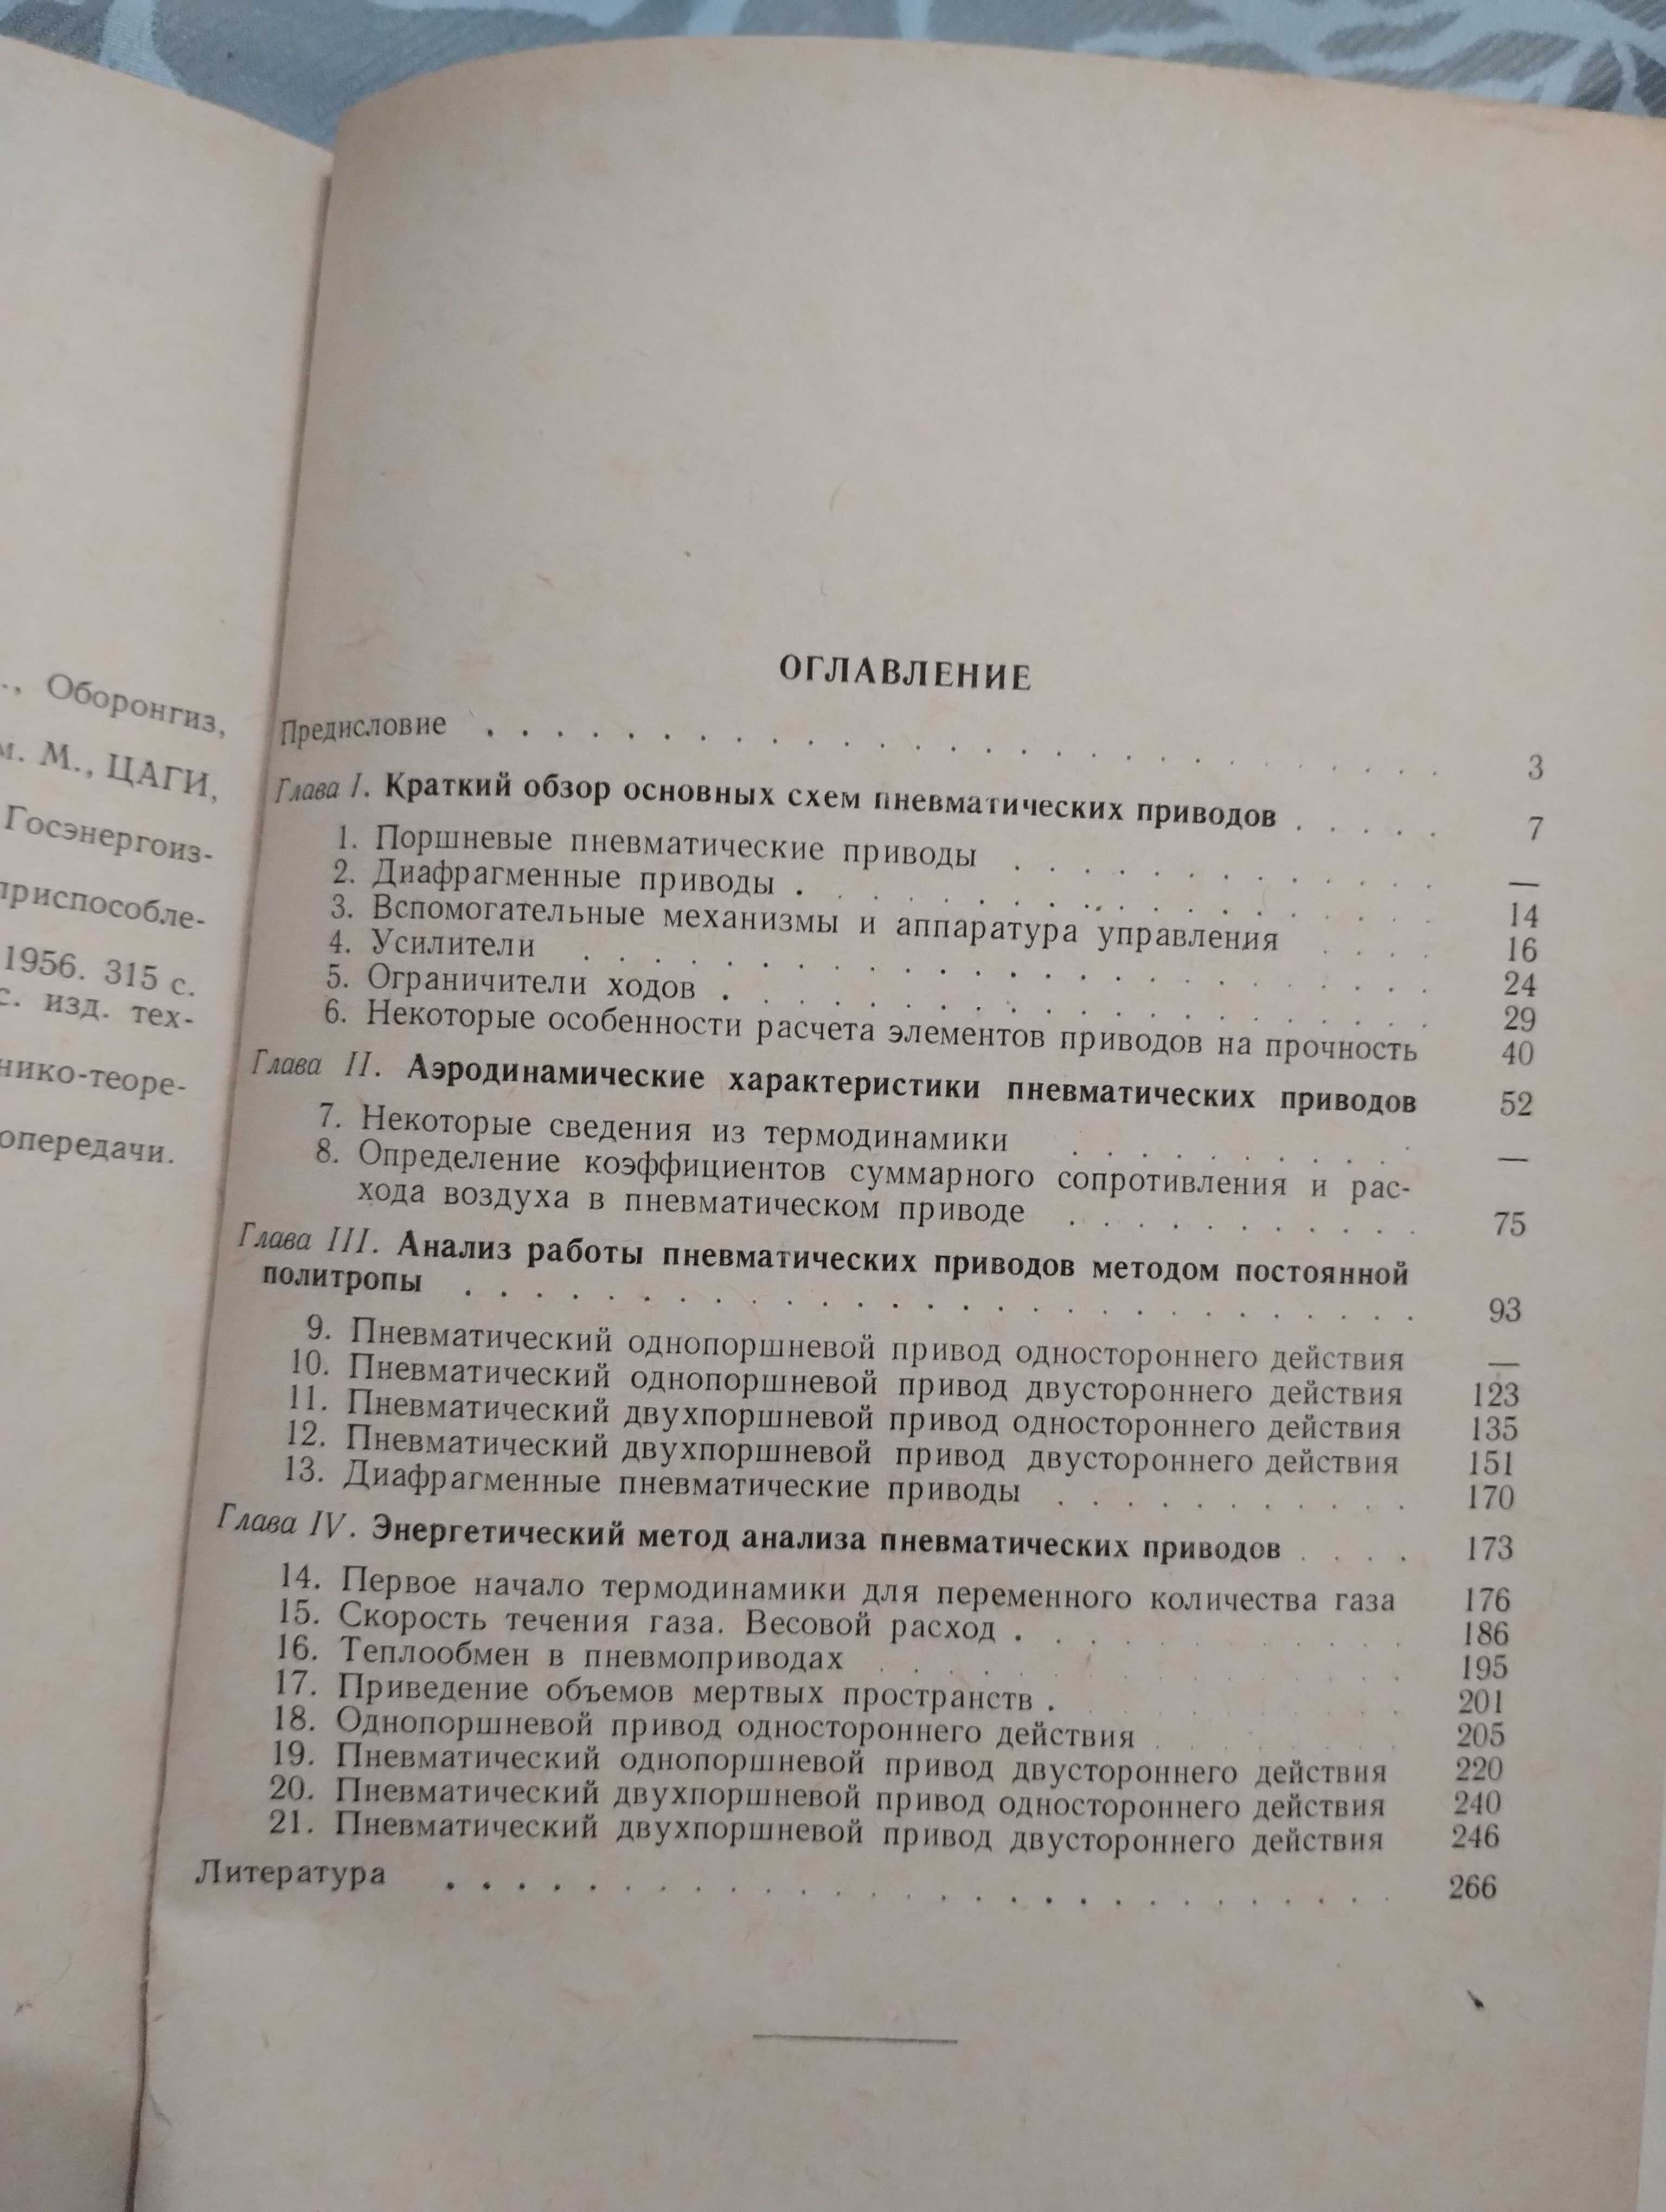 "Основа расчета пневматических приводов" А. Г. Холзунов. 1964 год.